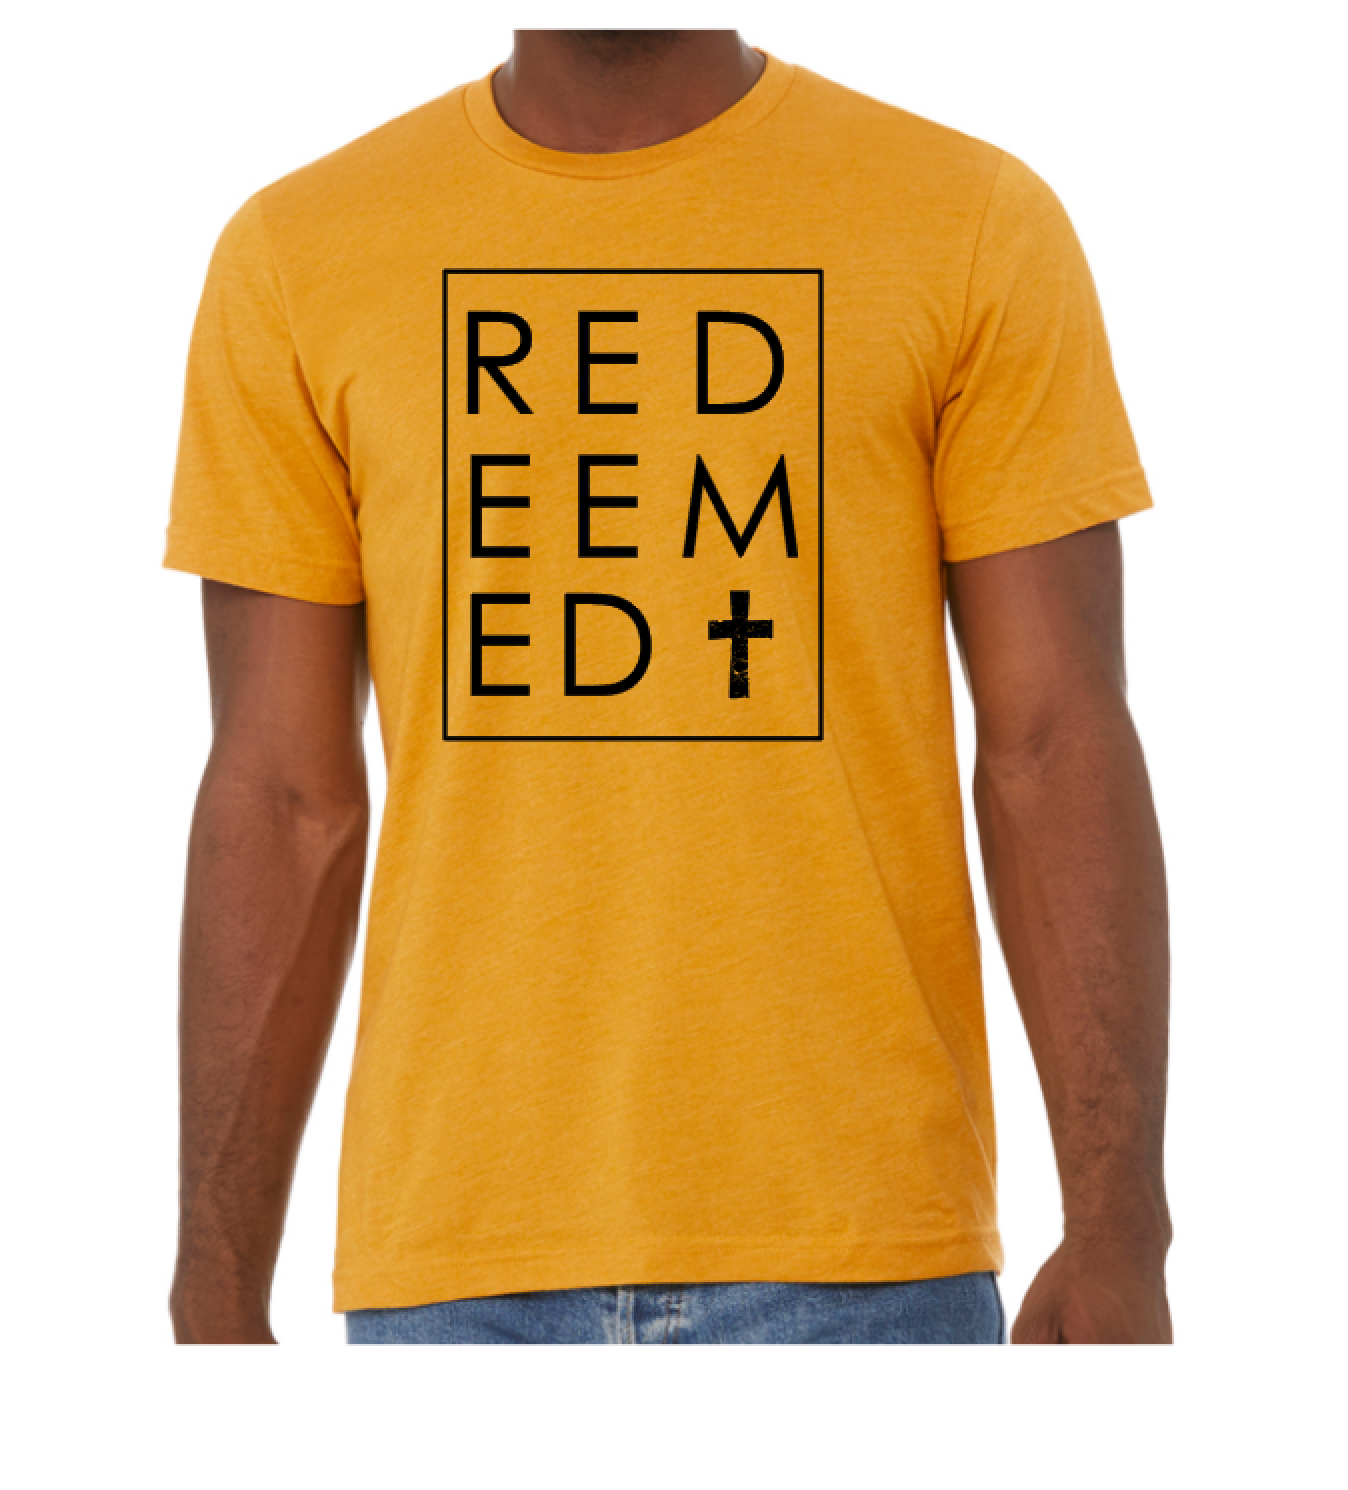 Redeemed + Cross Shirt